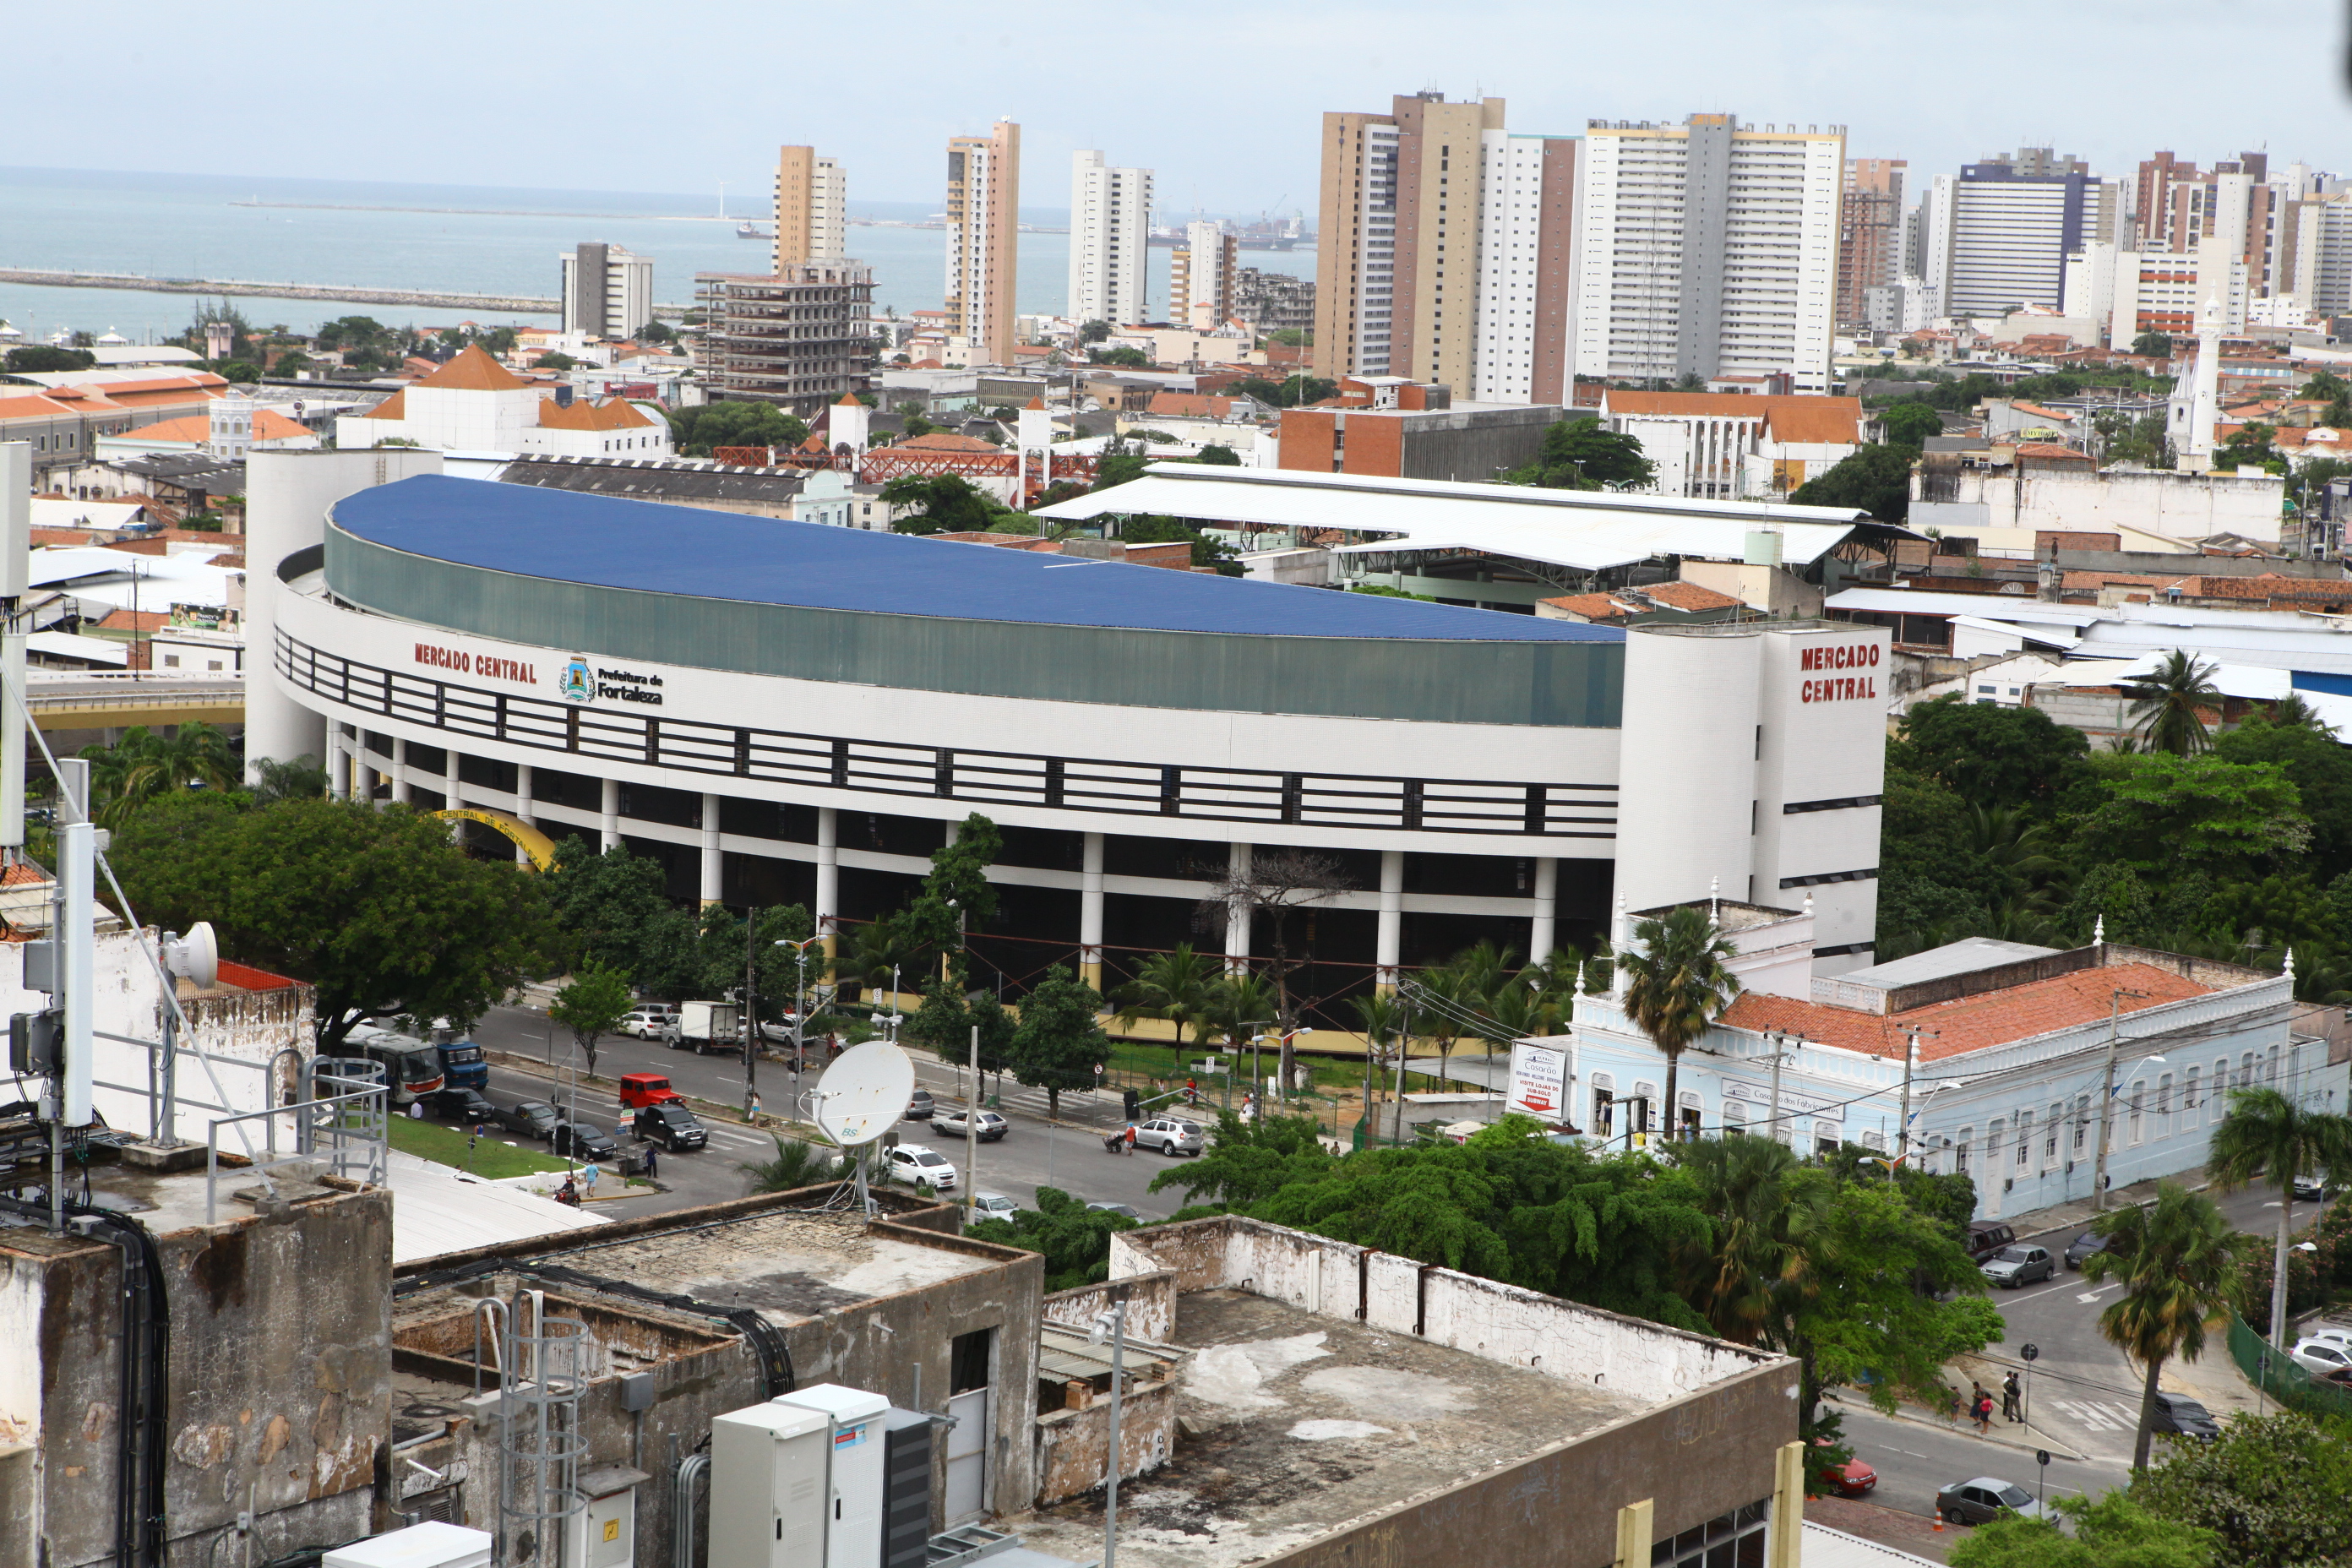  O atendimento segue em pontos turísticos e shoppings da capital até o dia 27 de janeiro (Foto: Kaio Machado)